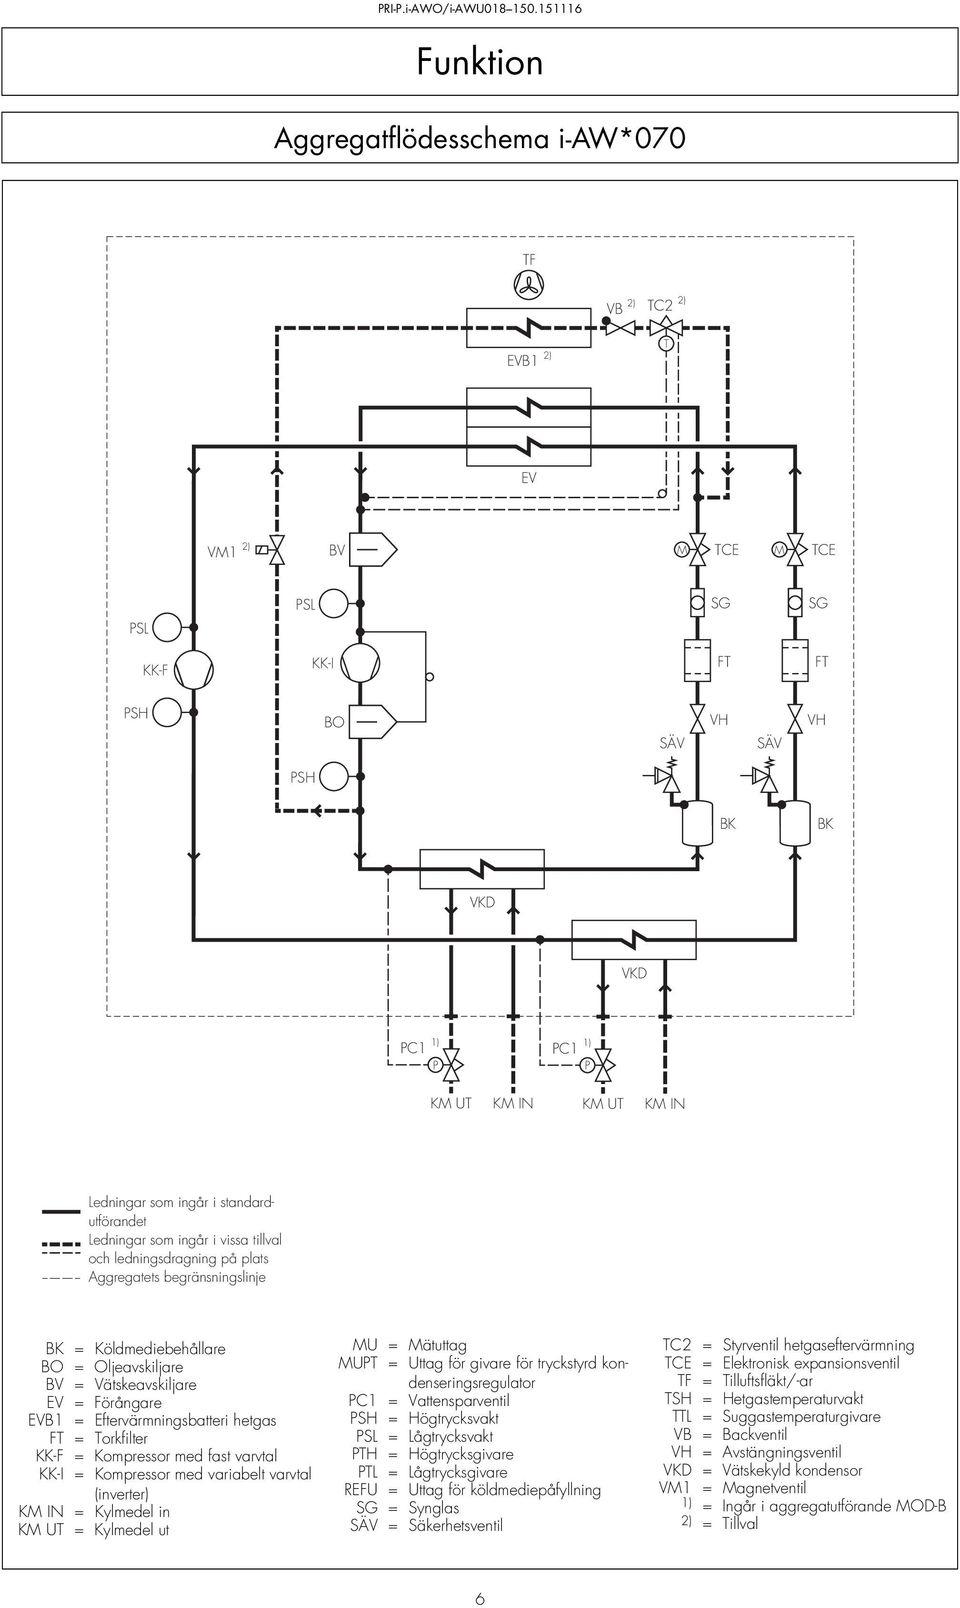 Vätskeavskiljare EV = Förångare EVB1 = Eftervärmningsbatteri hetgas FT = Torkfilter KK-F = Kompressor med fast varvtal KK-I = Kompressor med variabelt varvtal (inverter) KM IN = Kylmedel in KM UT =